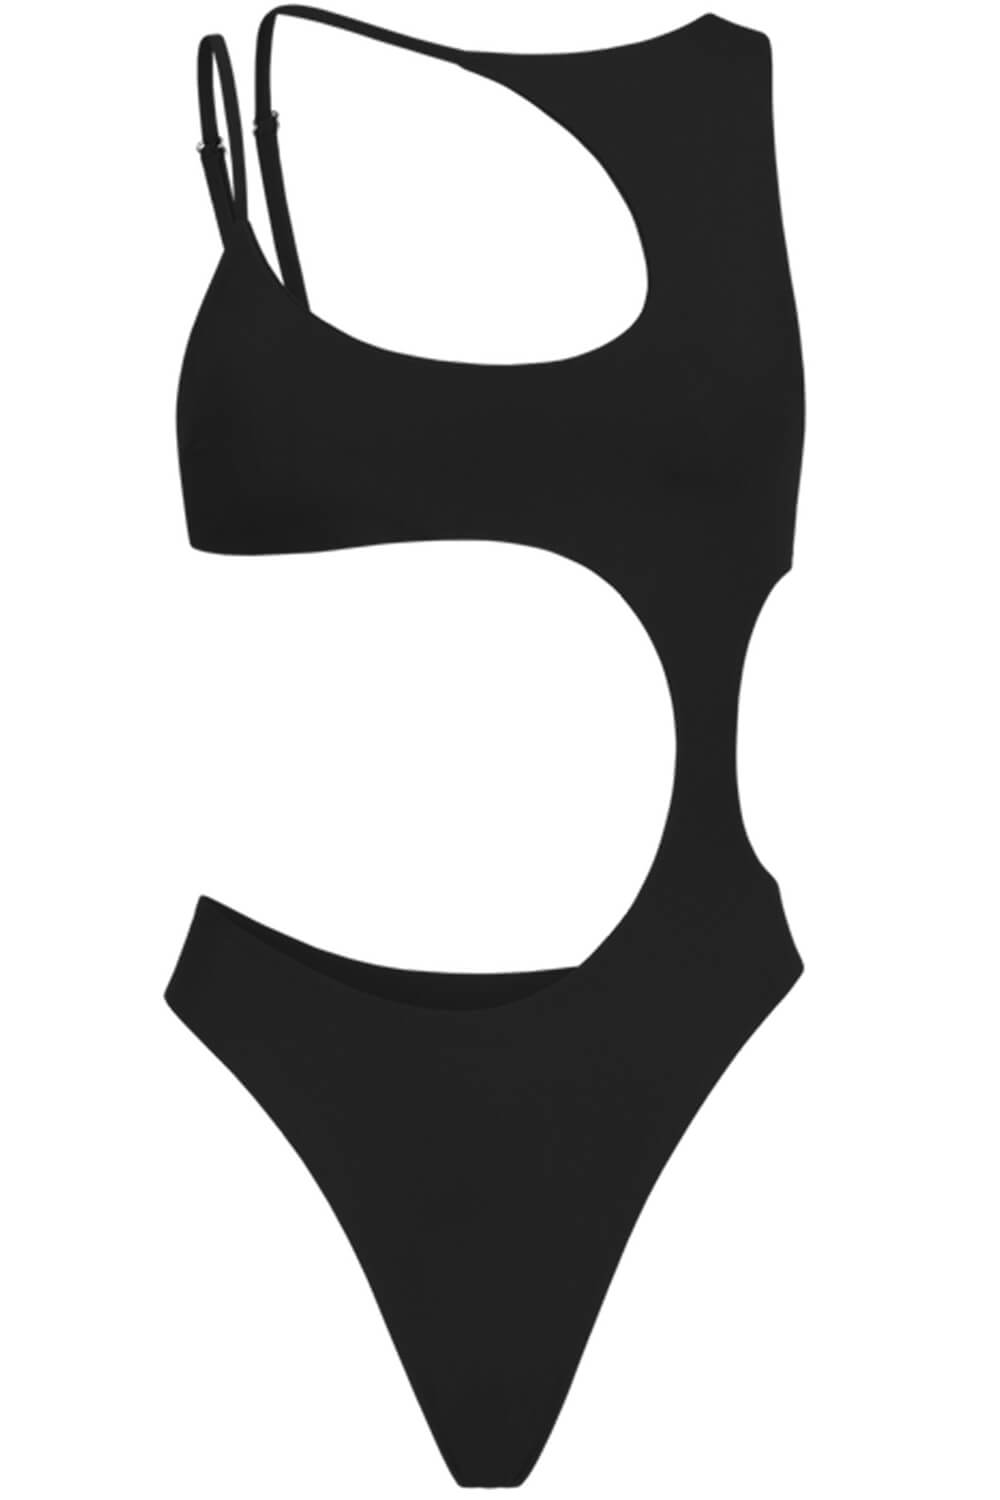 Black Asymmetric Cut Out One Piece Swimsuit